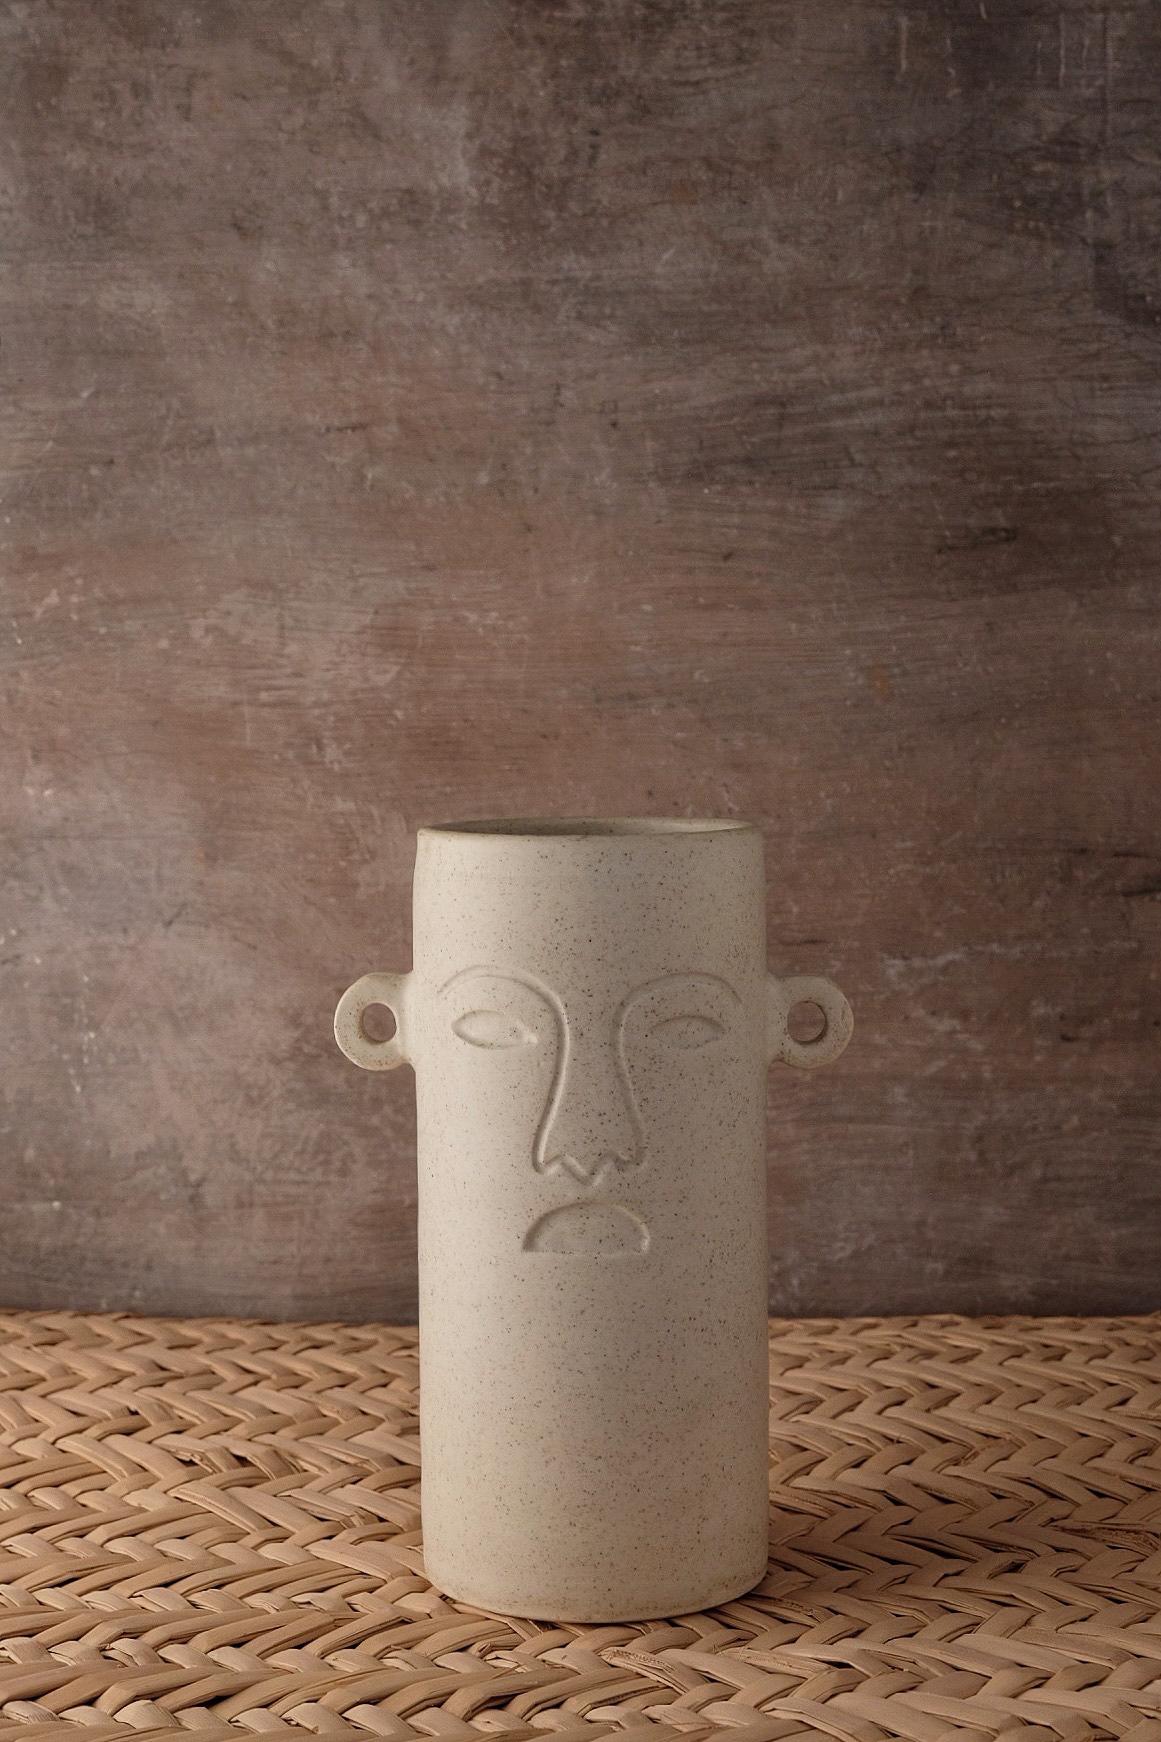 Vase Xochipilli d'Onora
Dimensions : D 12 x 25 cm
Matériaux : Céramique
Disponible en noir, blanc et sable.

Ce vase en céramique fait référence à des masques cérémoniels préhispaniques. Moulé par des artisans de l'État du Mexique.

Cette collection